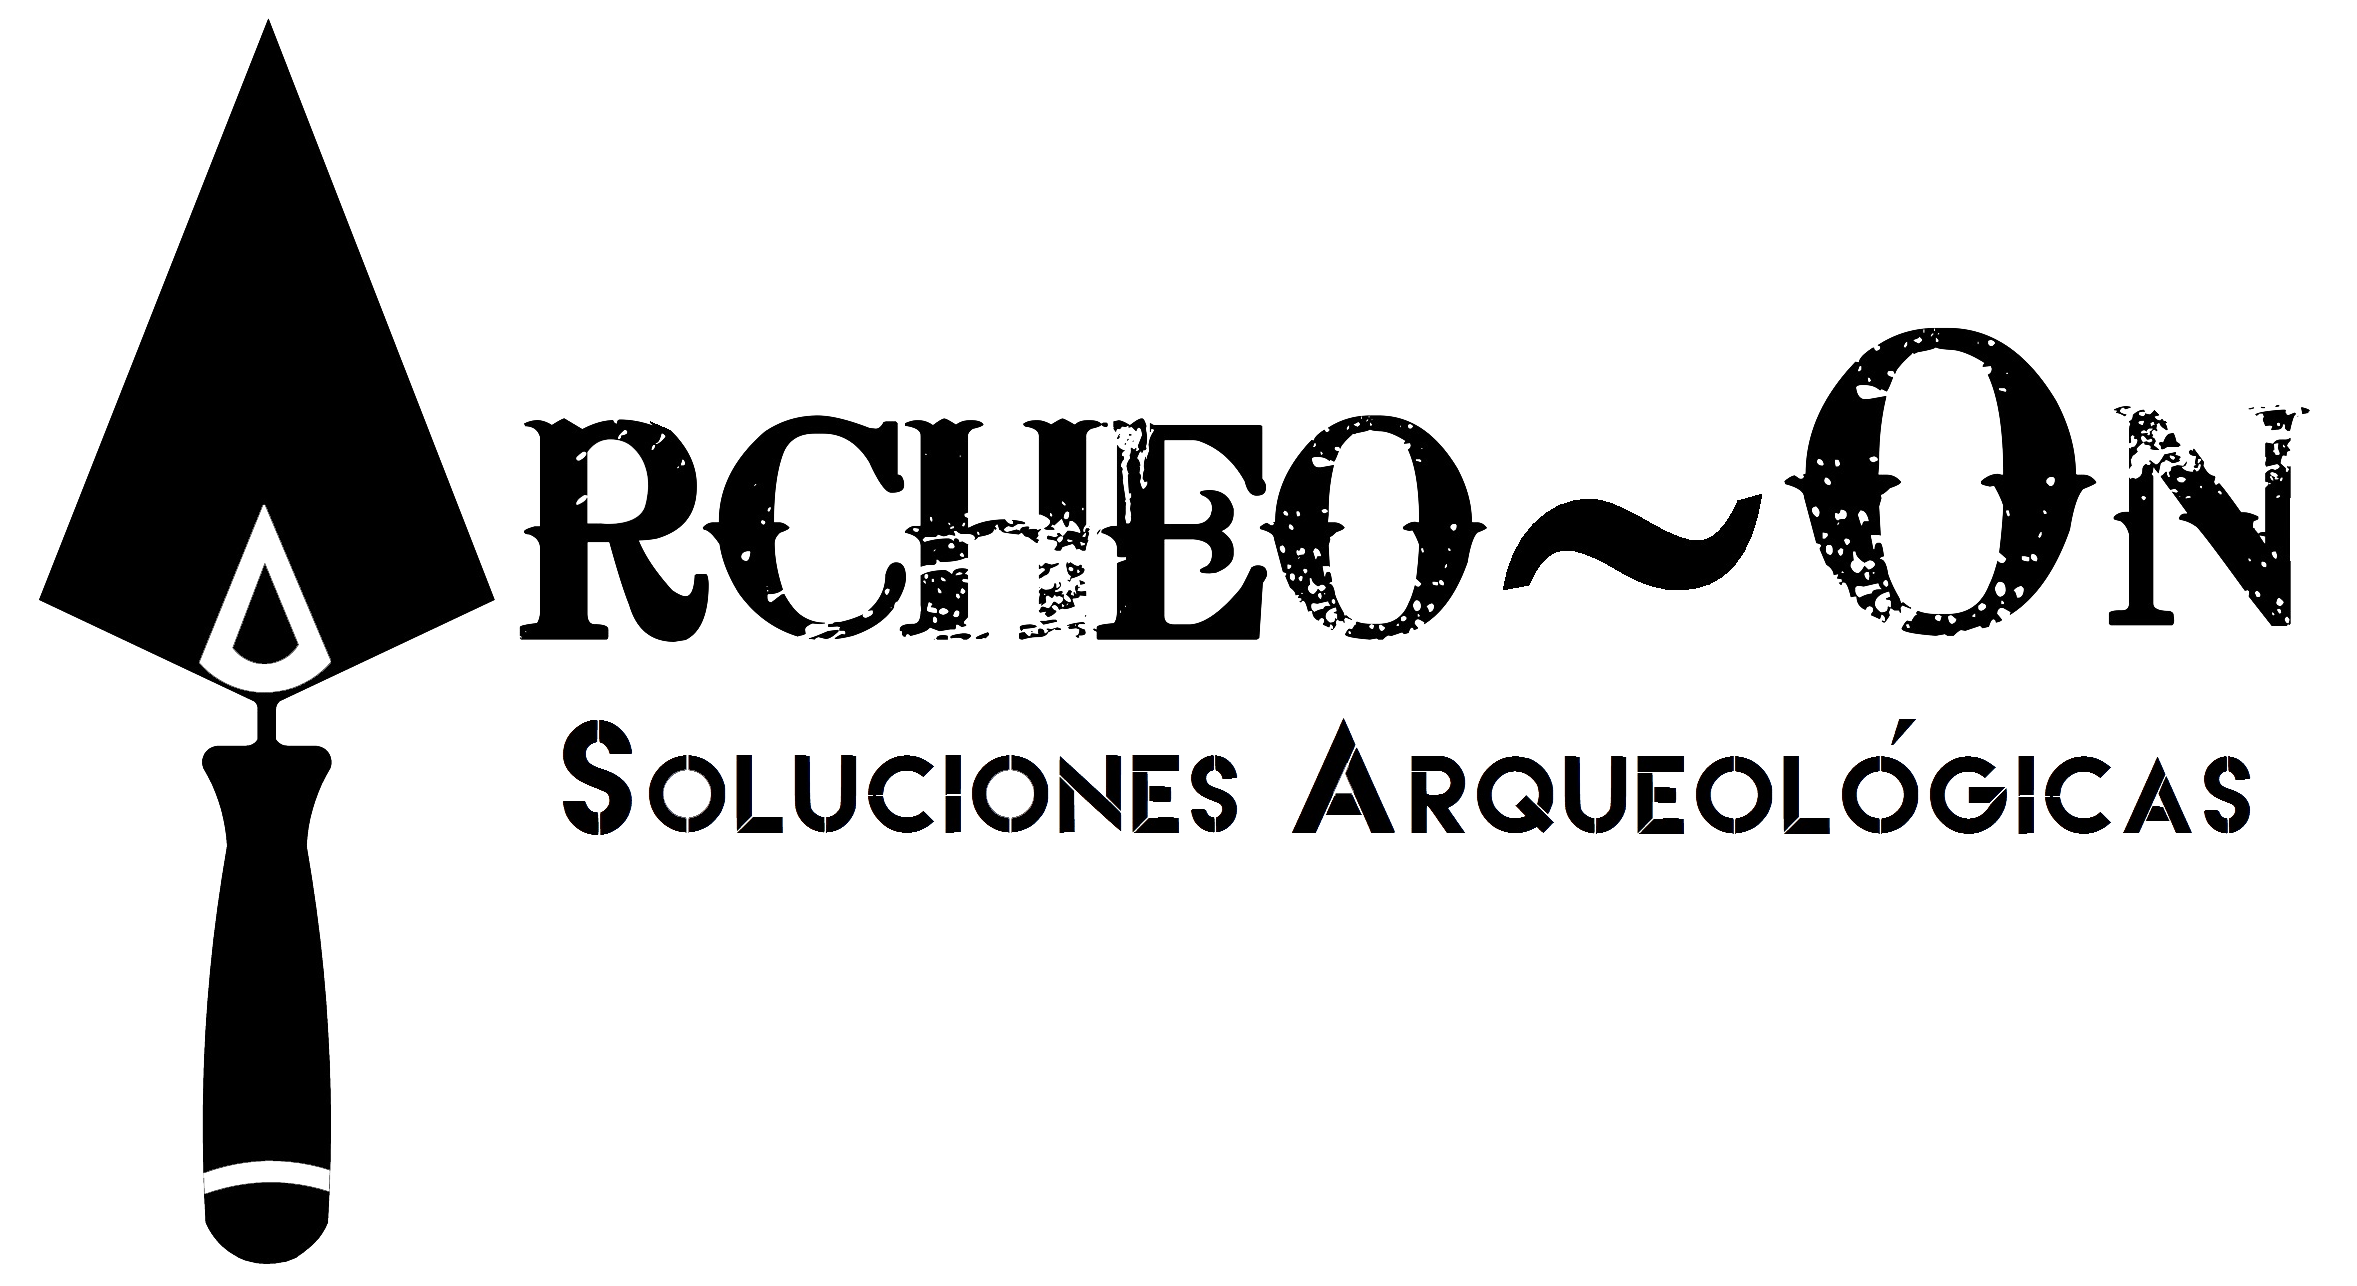 Archeo-On Soluciones arqueológicas - logotipo